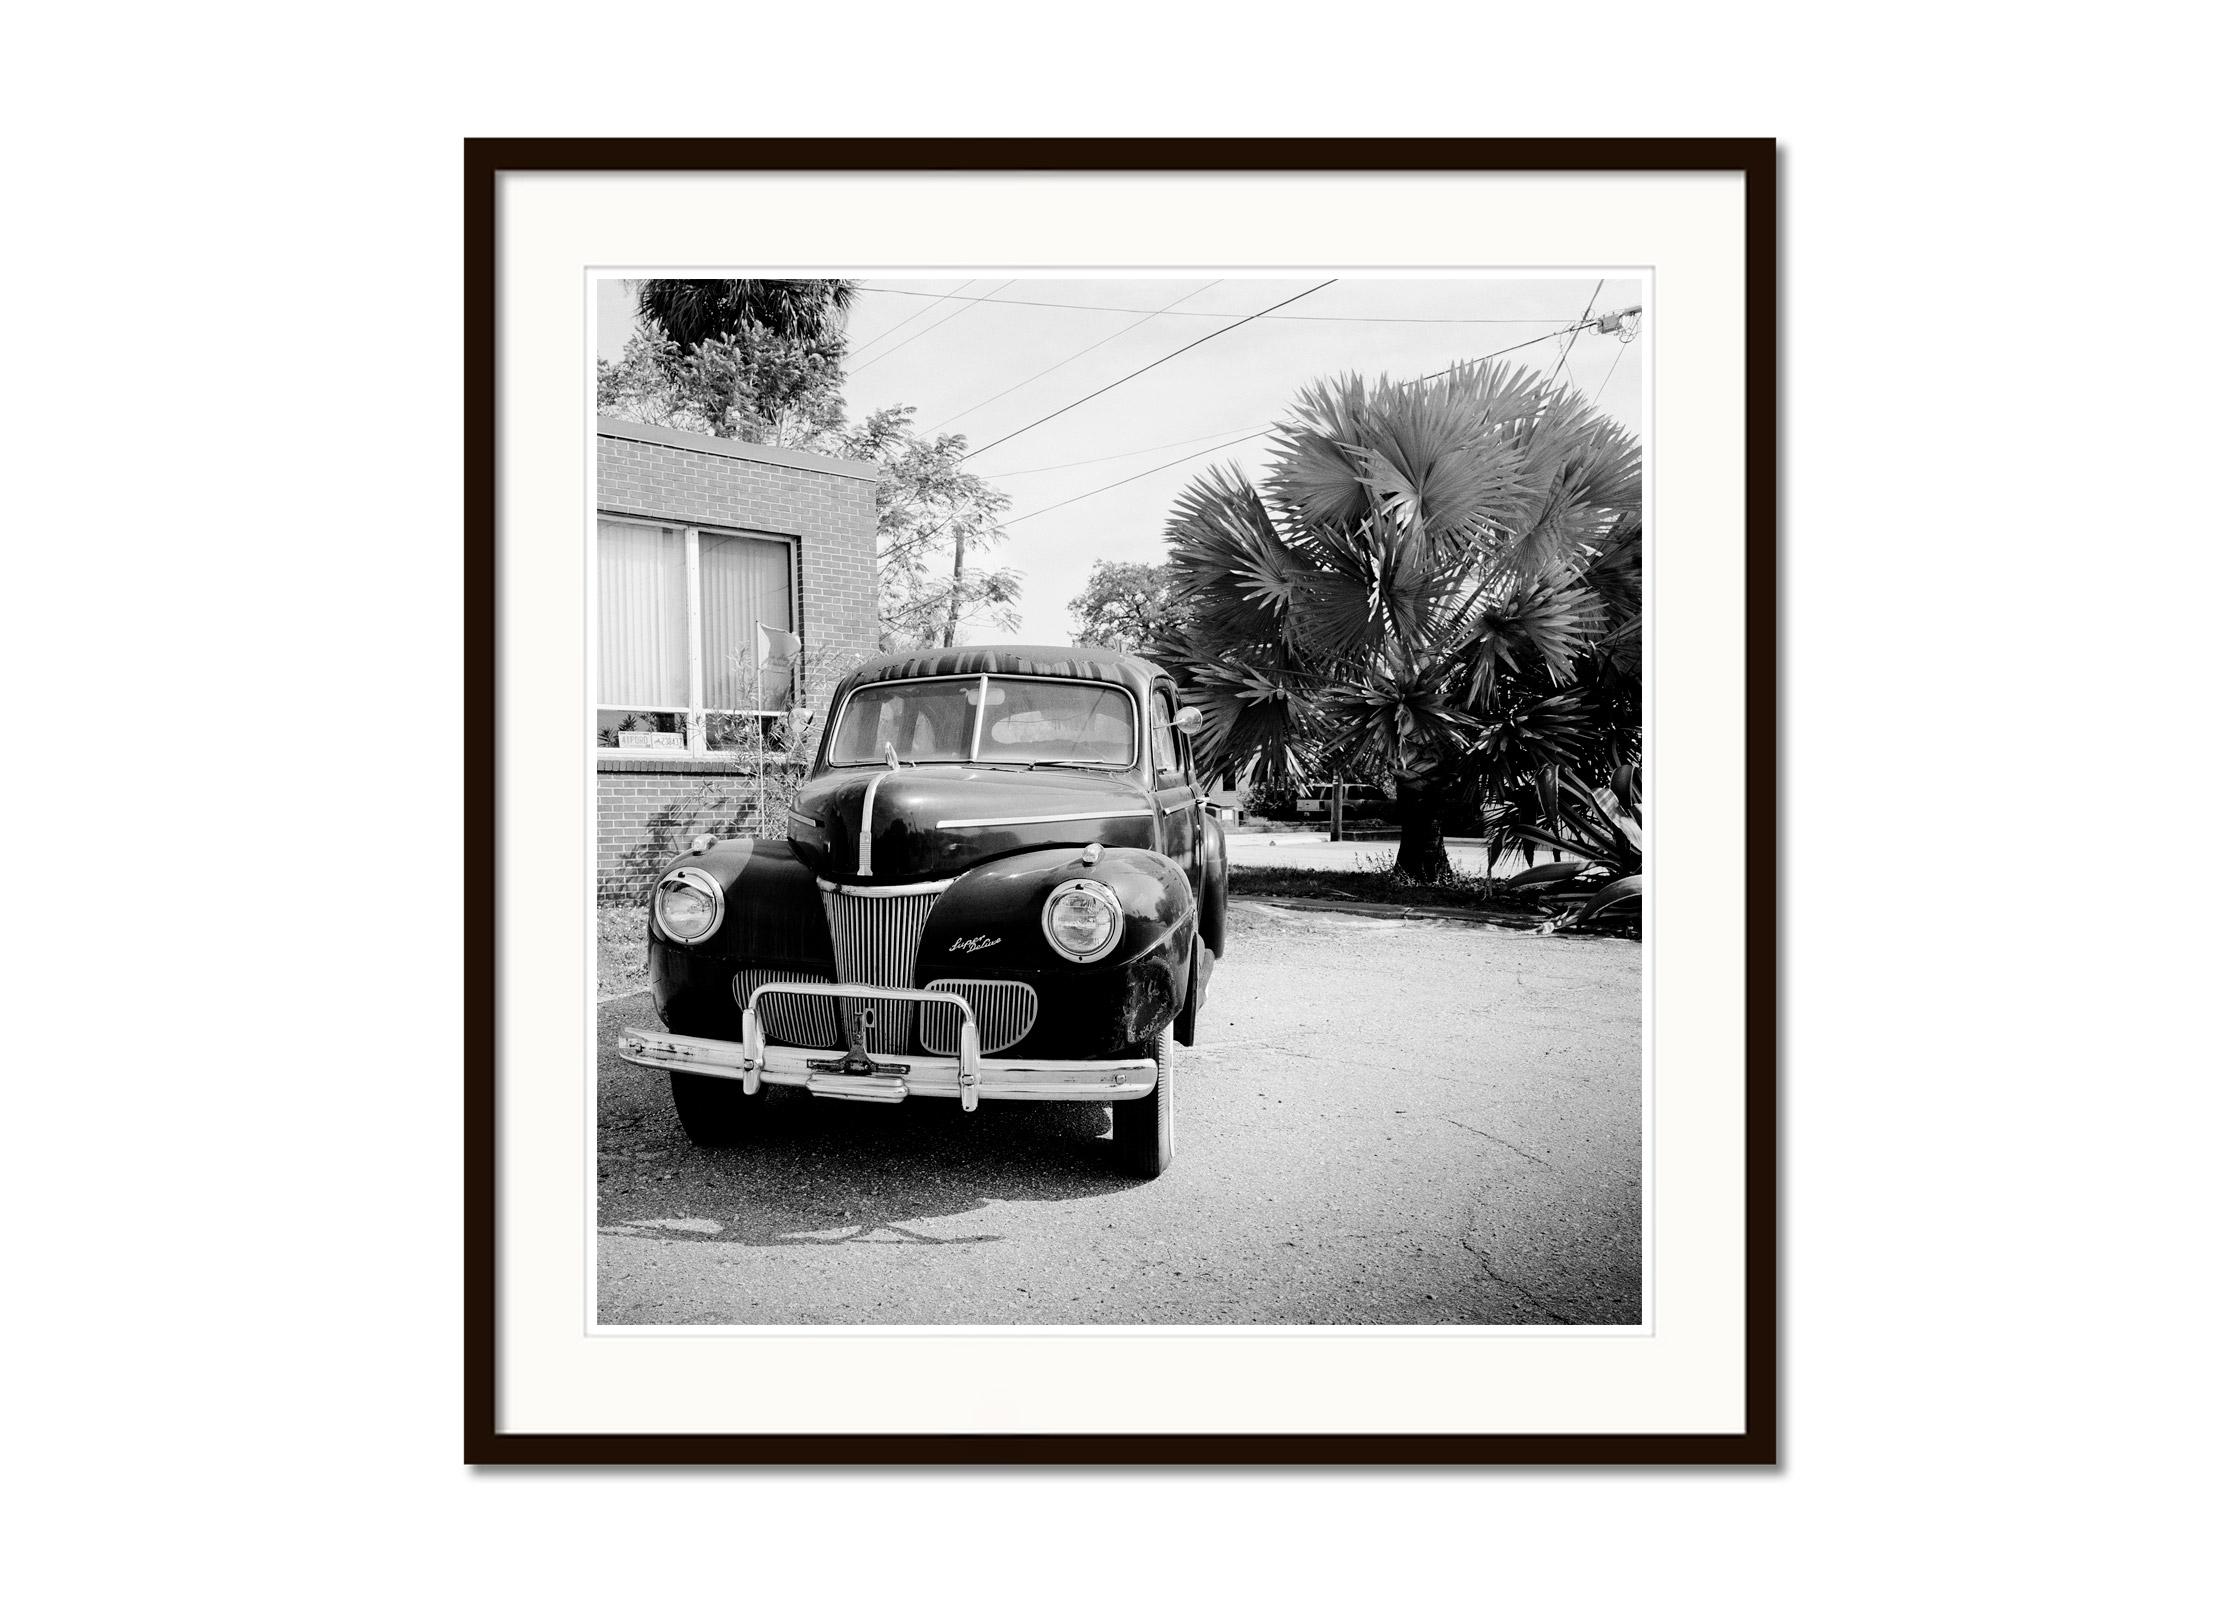 1941 Ford Super Deluxe Business Coupe, USA, schwarz-weiße Fotografie, Landschaft (Grau), Black and White Photograph, von Gerald Berghammer